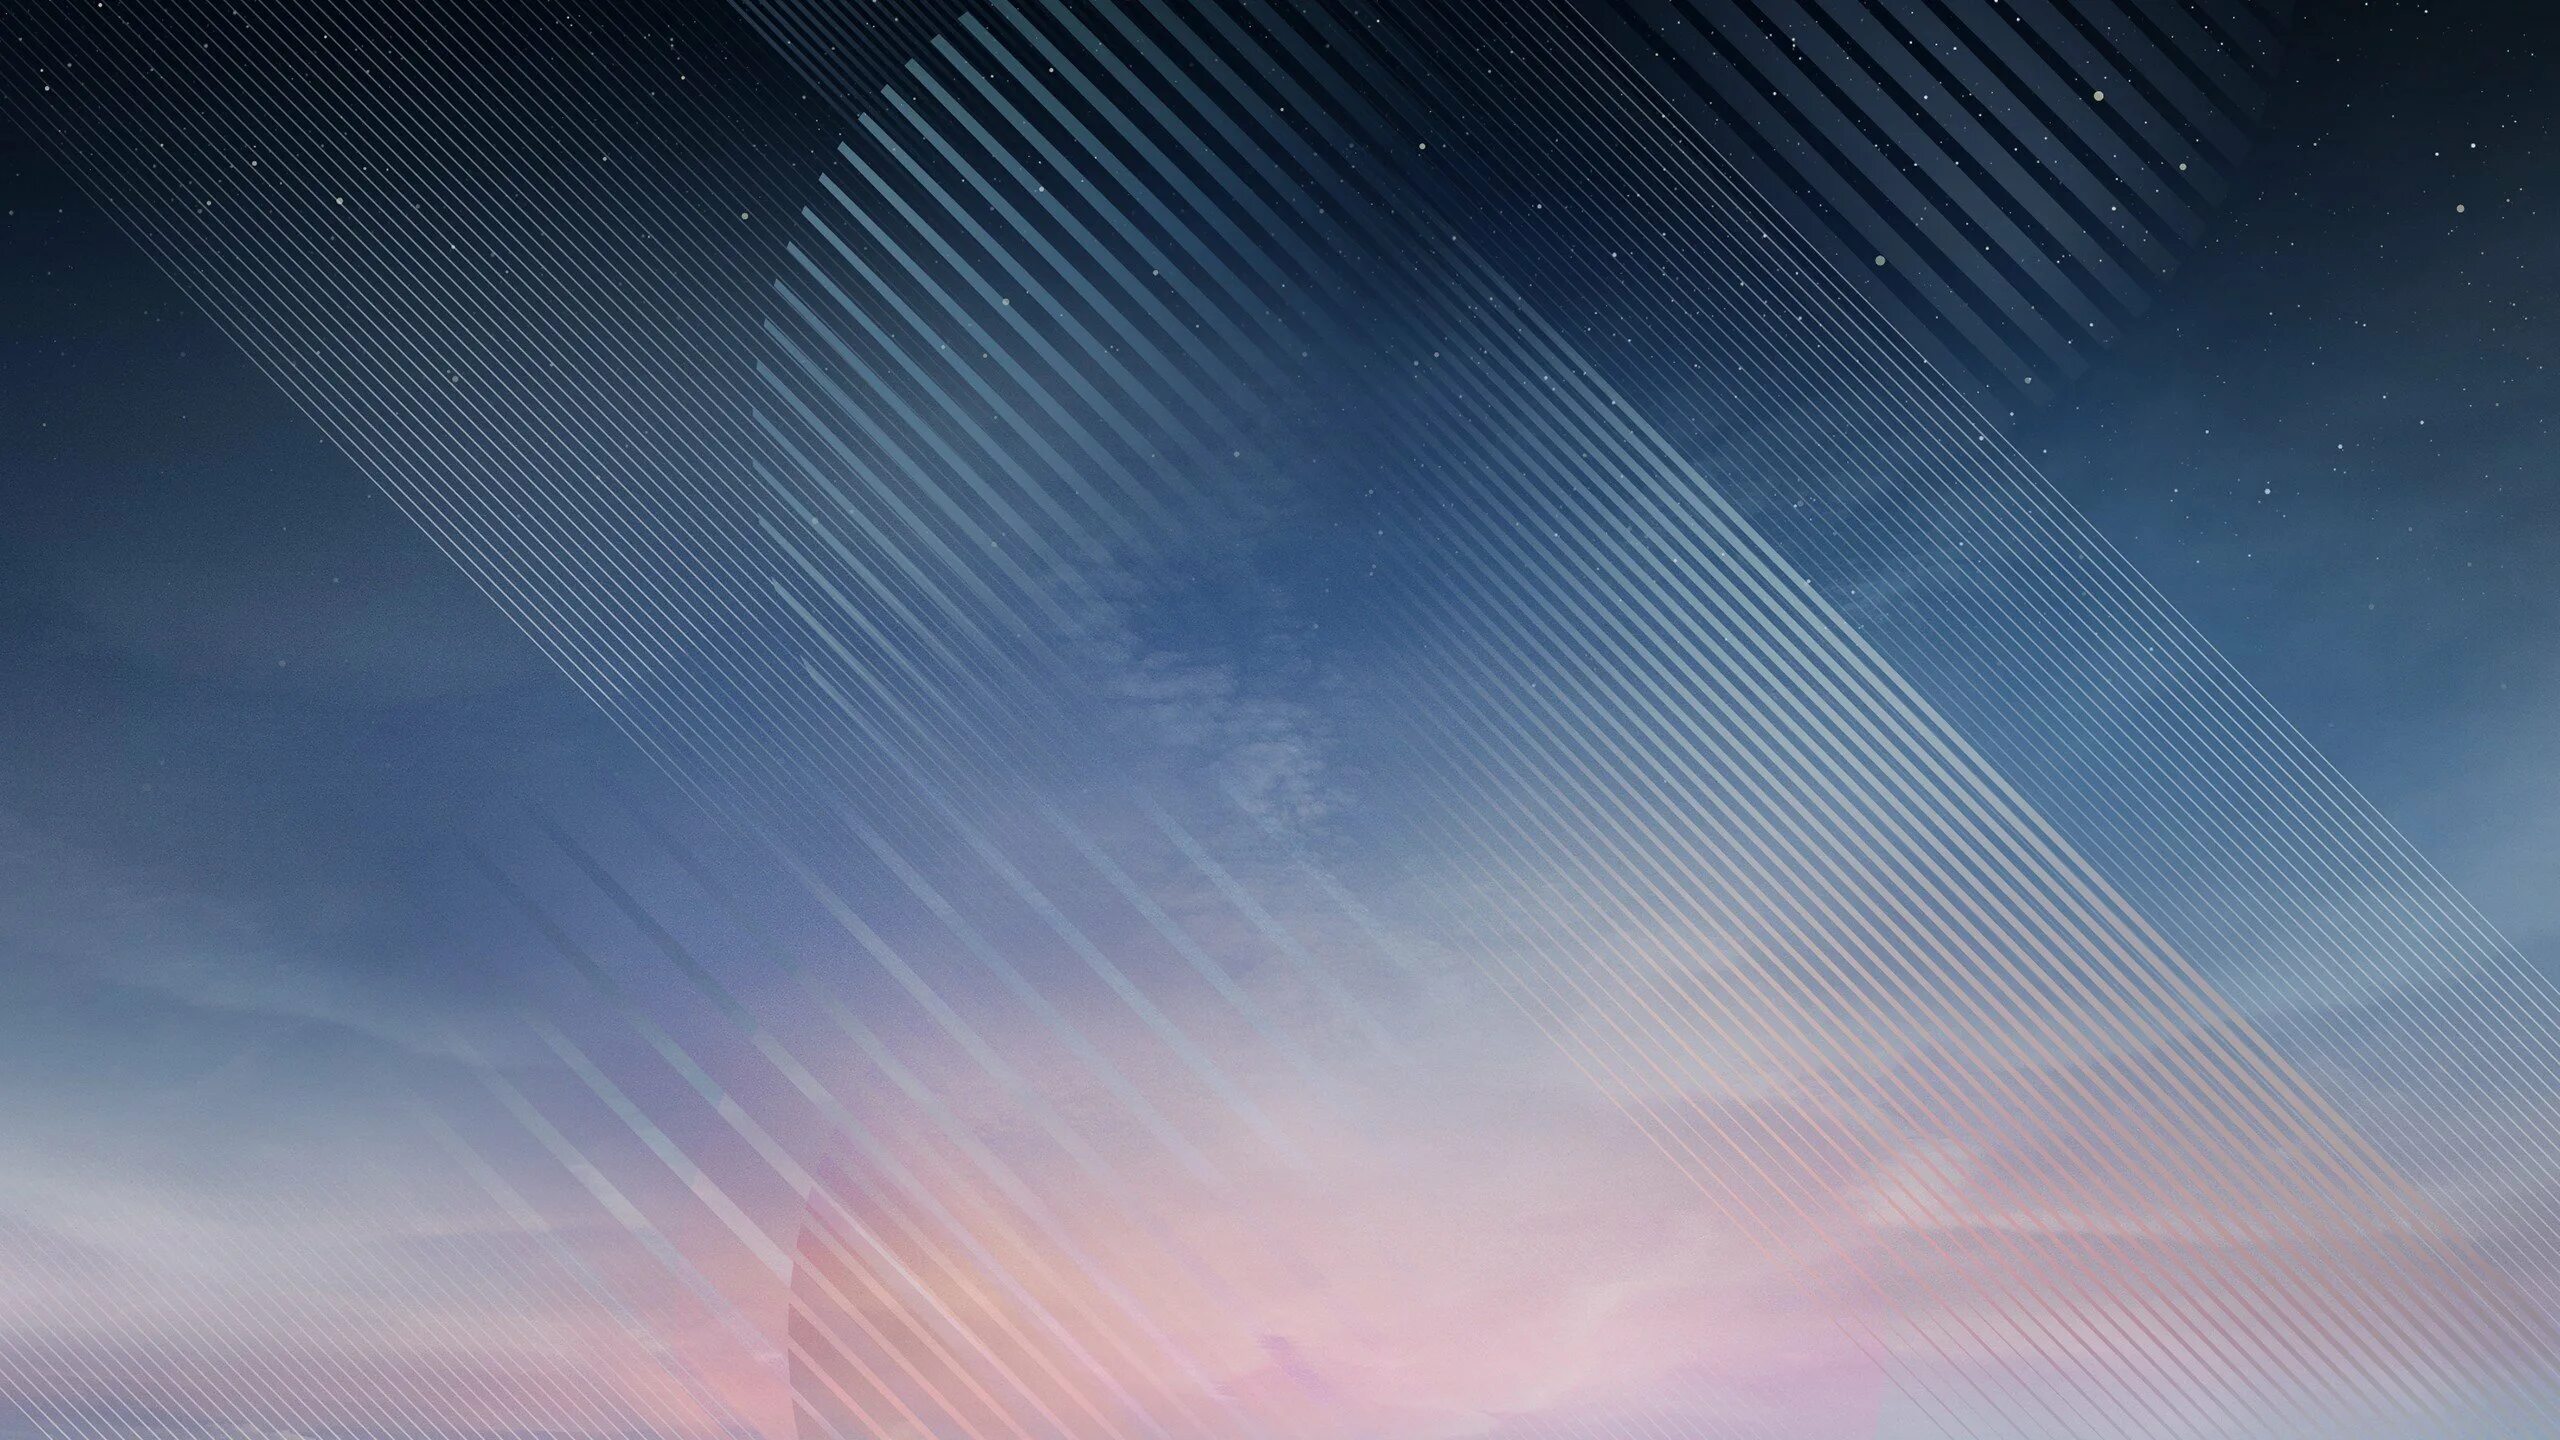 Samsung Galaxy Note 8 Wallpaper. Нейтральный фон. Спокойный фон. Нейтральный фон для рабочего стола. Обои на самсунг